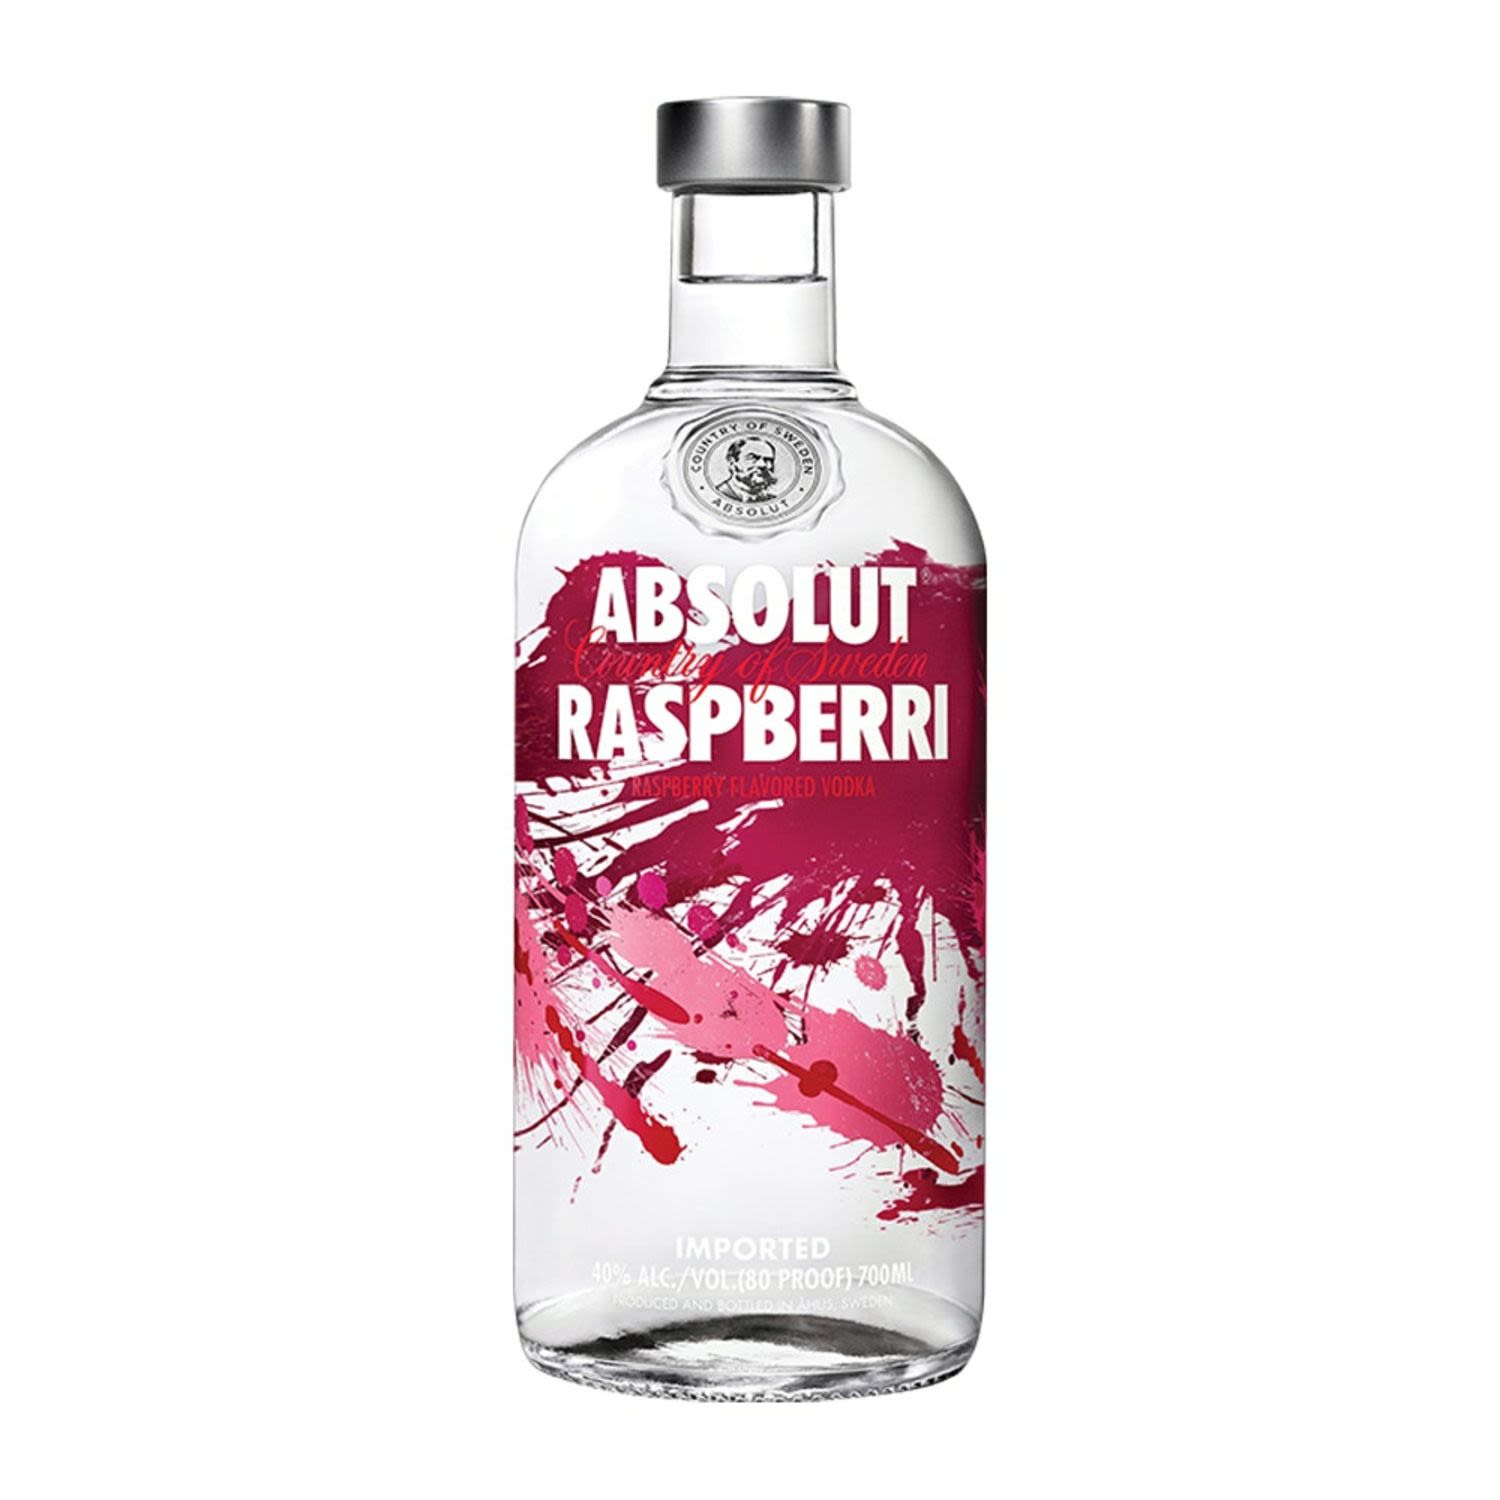 Absolut Raspberri Vodka 700mL Bottle